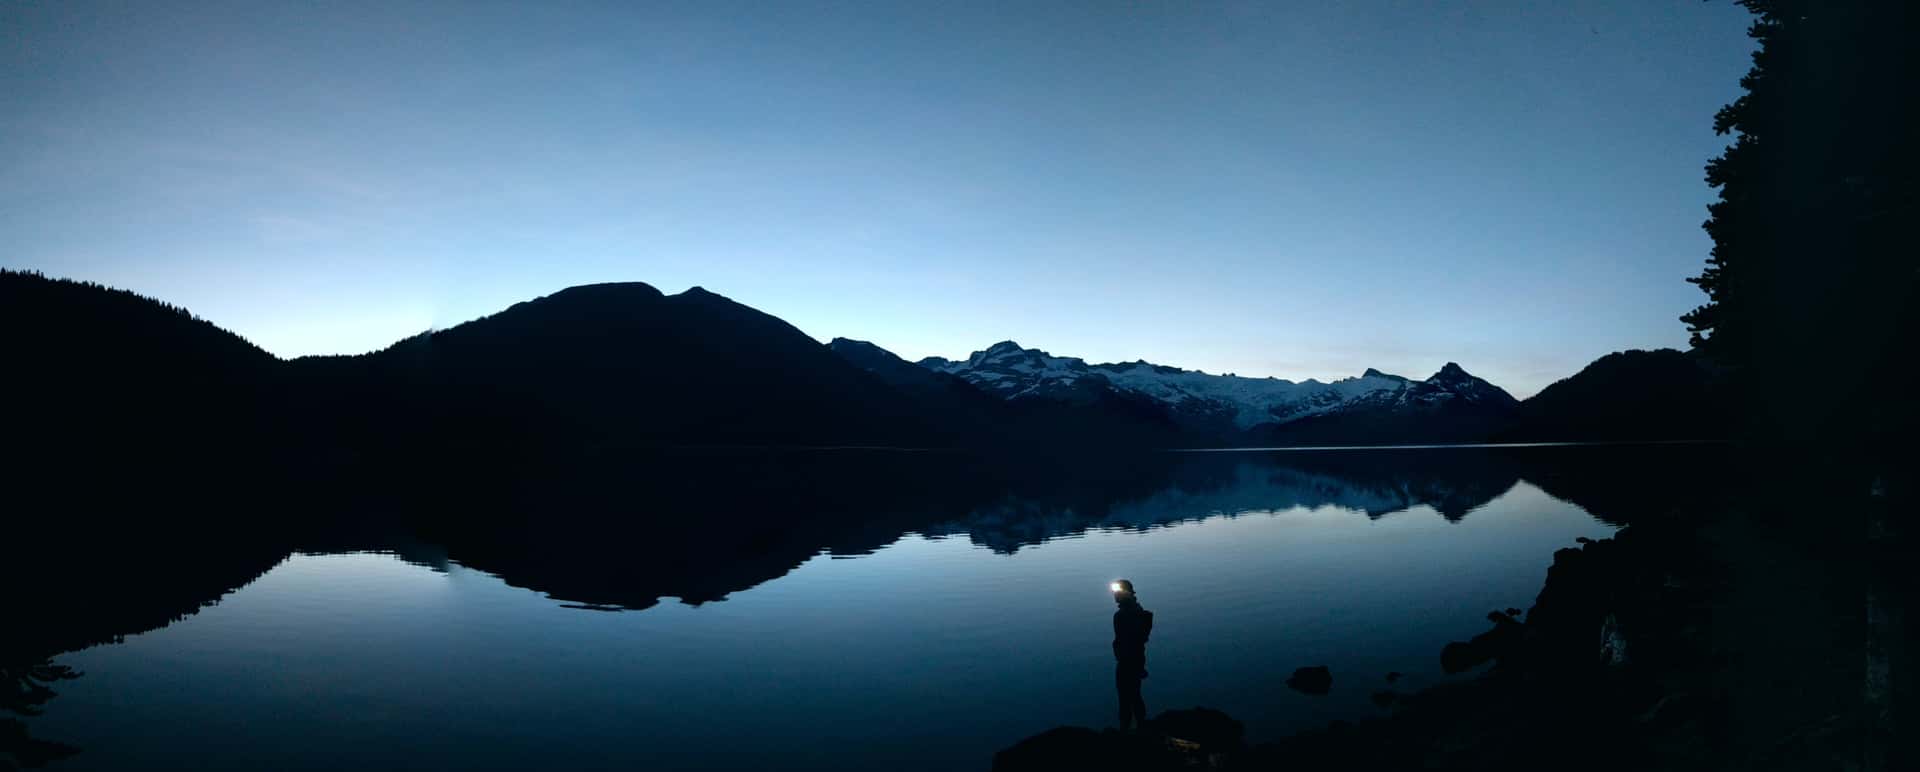 shining a headlamp from the shore of Garibaldi Lake at dawn